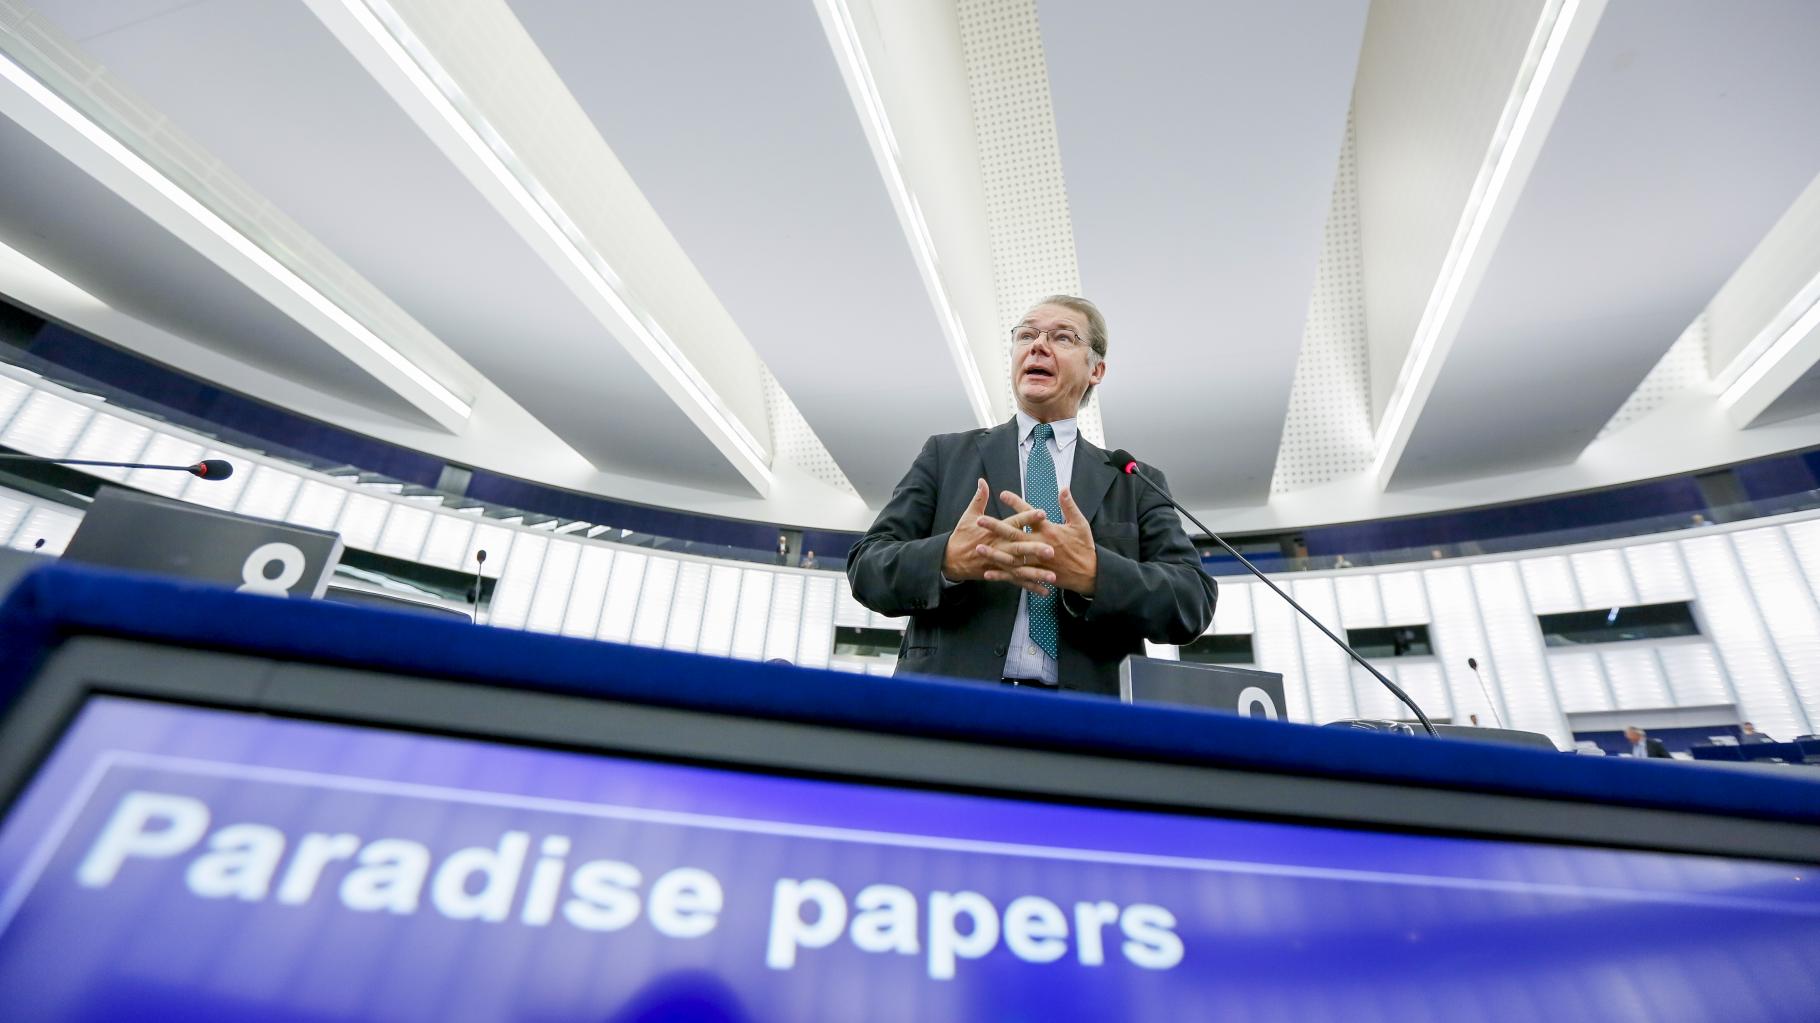 Ein Parlamentarier spricht; im Vordergrund ein Bildschirm, der die Worte „Paradise papers“ anzeigt